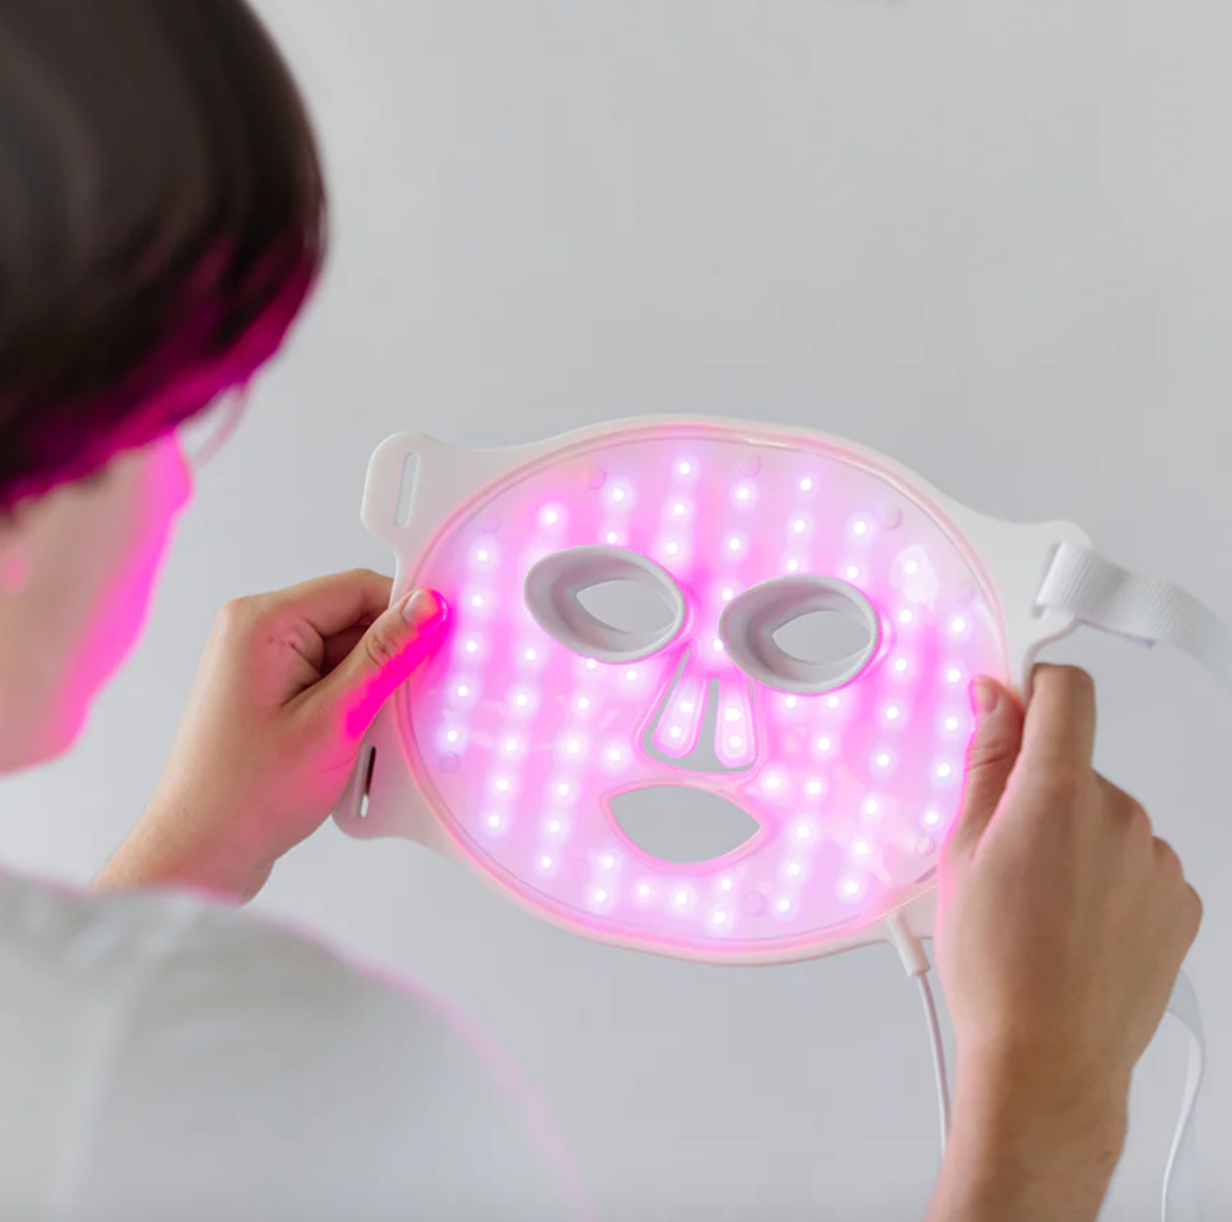 Omnilux Acne LED Face Mask